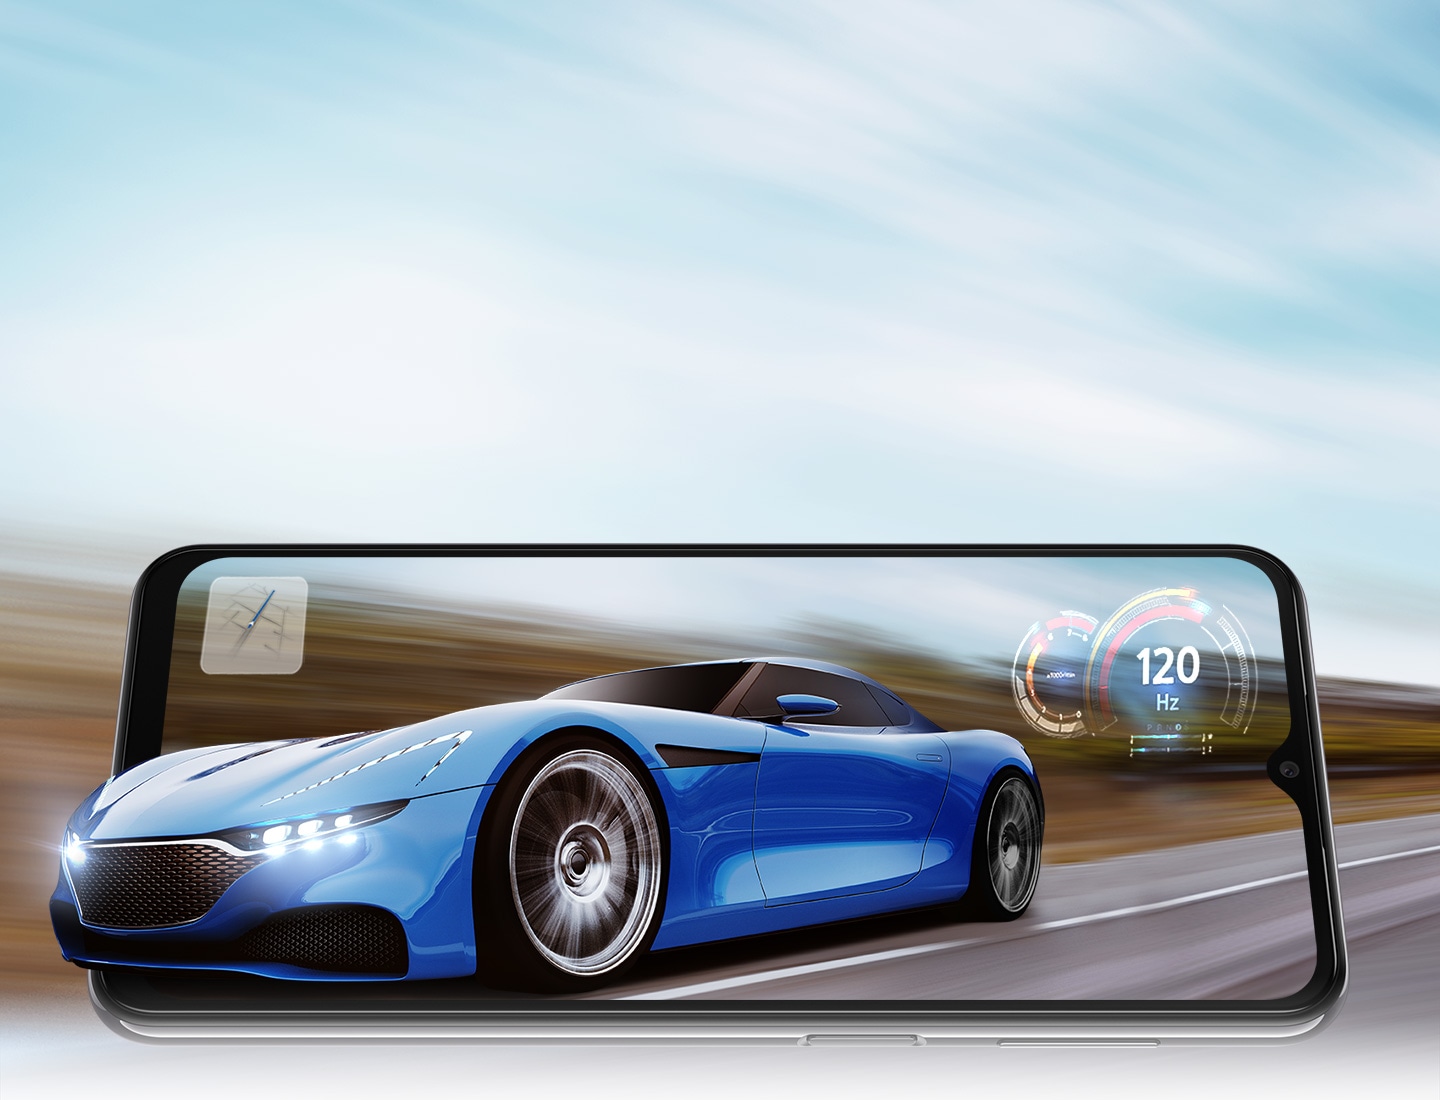 Galaxy A23 5G je u pejzažnom režimu i na ekranu je sportski automobil koji vozi na putu. Pozadina je zamagljena što ukazuje na to da se brzo vozi. Prednji deo automobila se proteže malo dalje od okvira telefona kao da automobil iskače iz ekrana. Tu su i mapa i brzinomer sa 120 Hz u sredini, što se odnosi na brzu brzinu osvežavanja telefona.